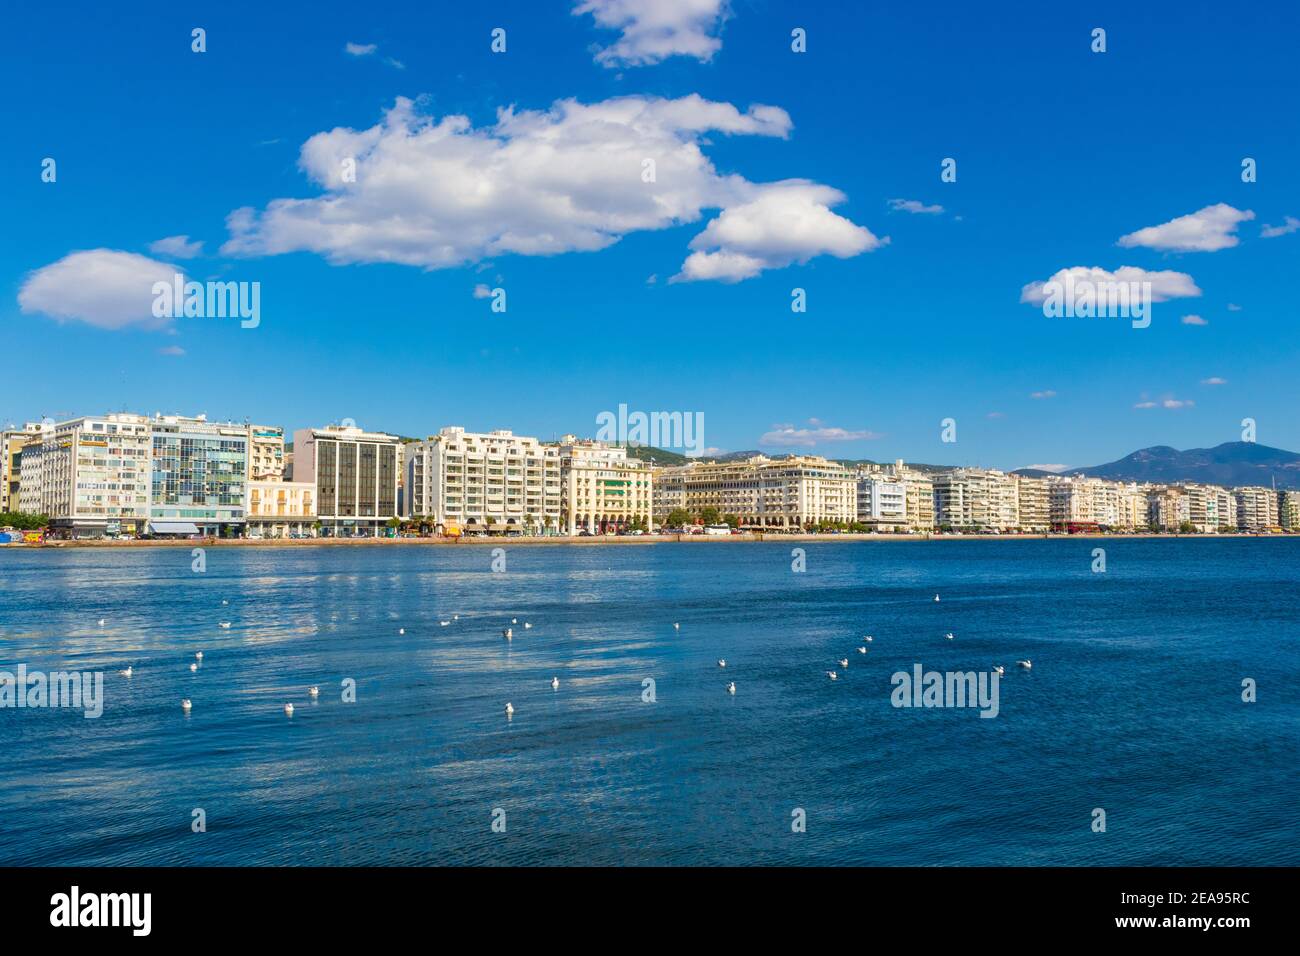 Vista sul lungomare di Salonicco. Salonicco è una città portuale greca Sul Golfo Termaico del Mar Egeo.Grecia, 22 settembre 2017 Foto Stock